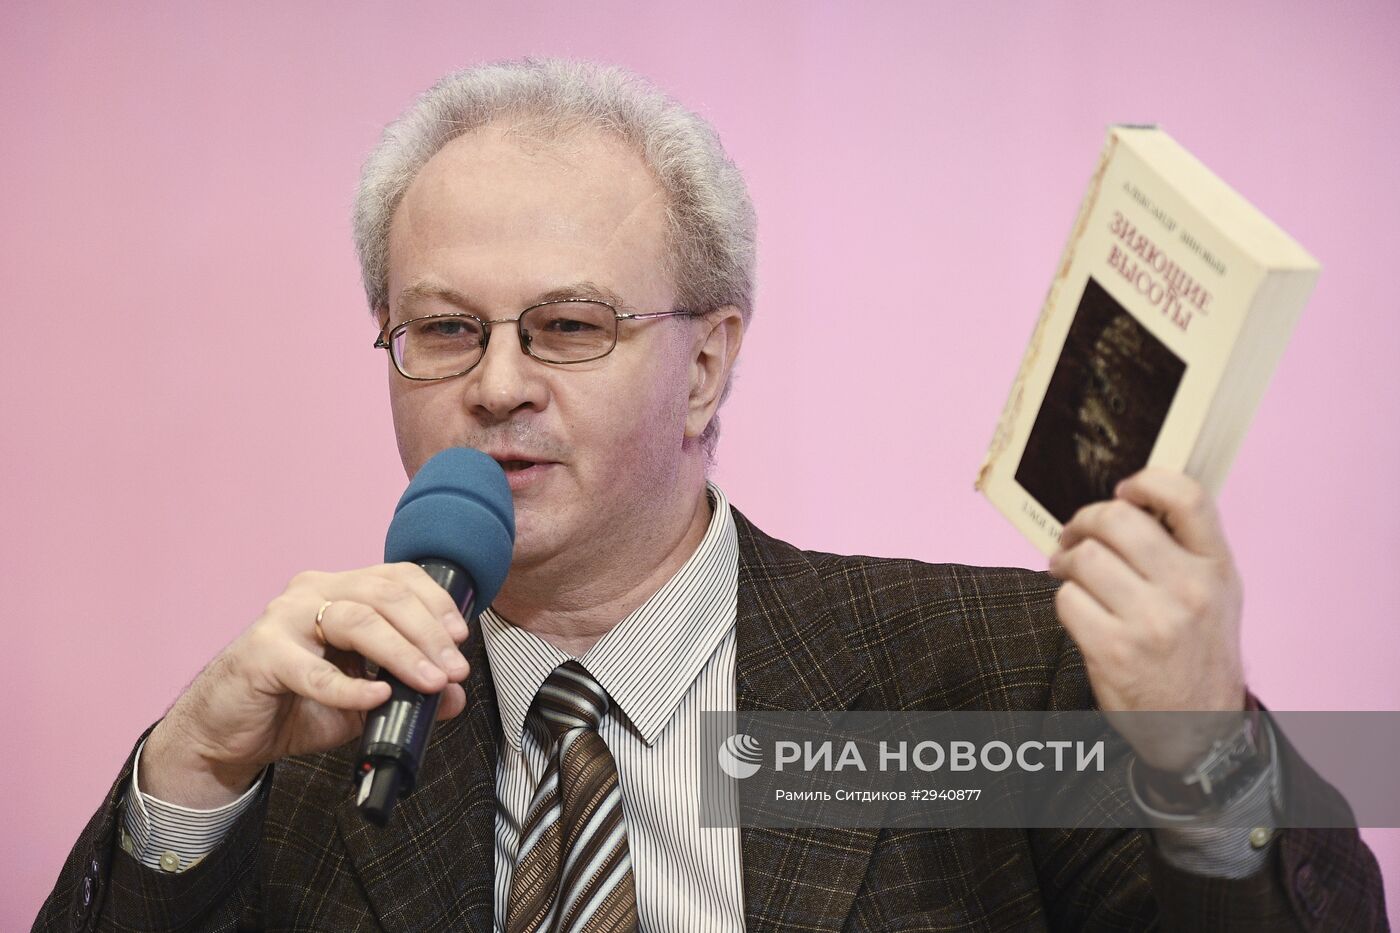 Презентация книги "Александр Зиновьев: Прометей отвергнутый"